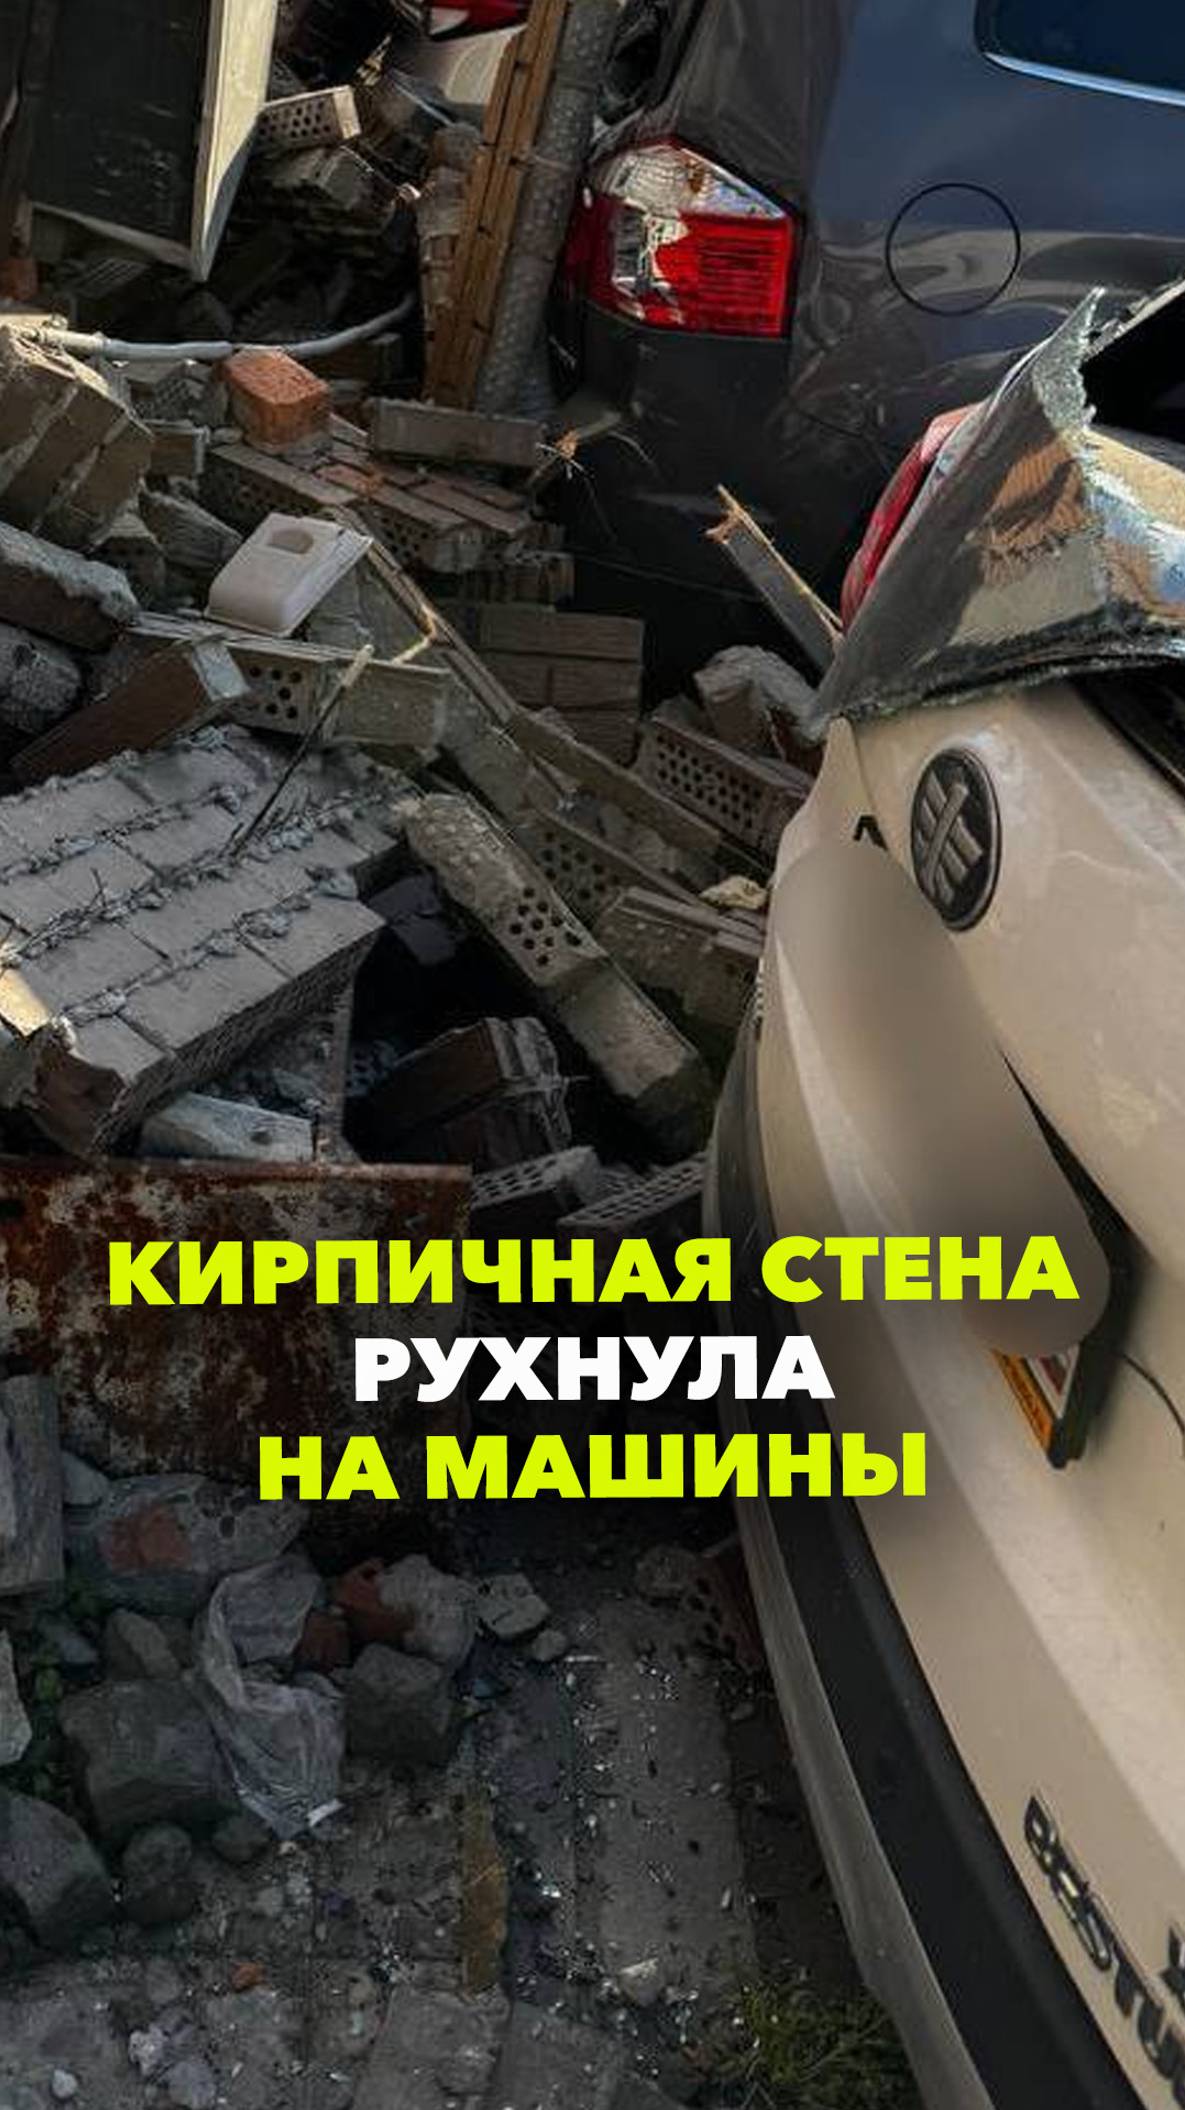 Кирпичная облицовка магазина на улице Бабкина рухнула на уровне второго этажа